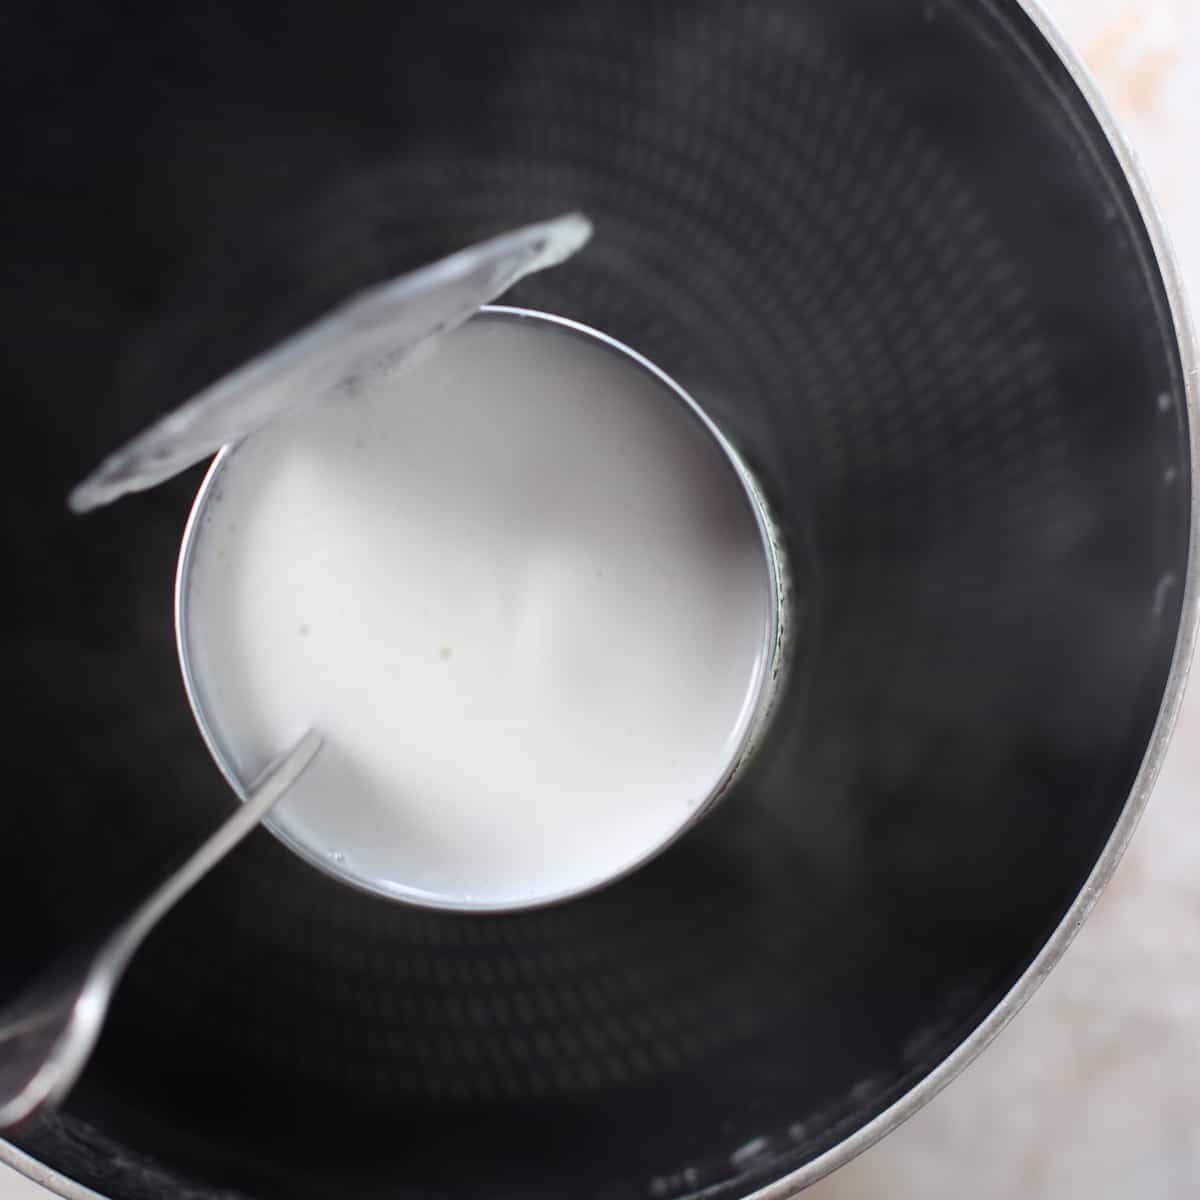 warming coconut milk